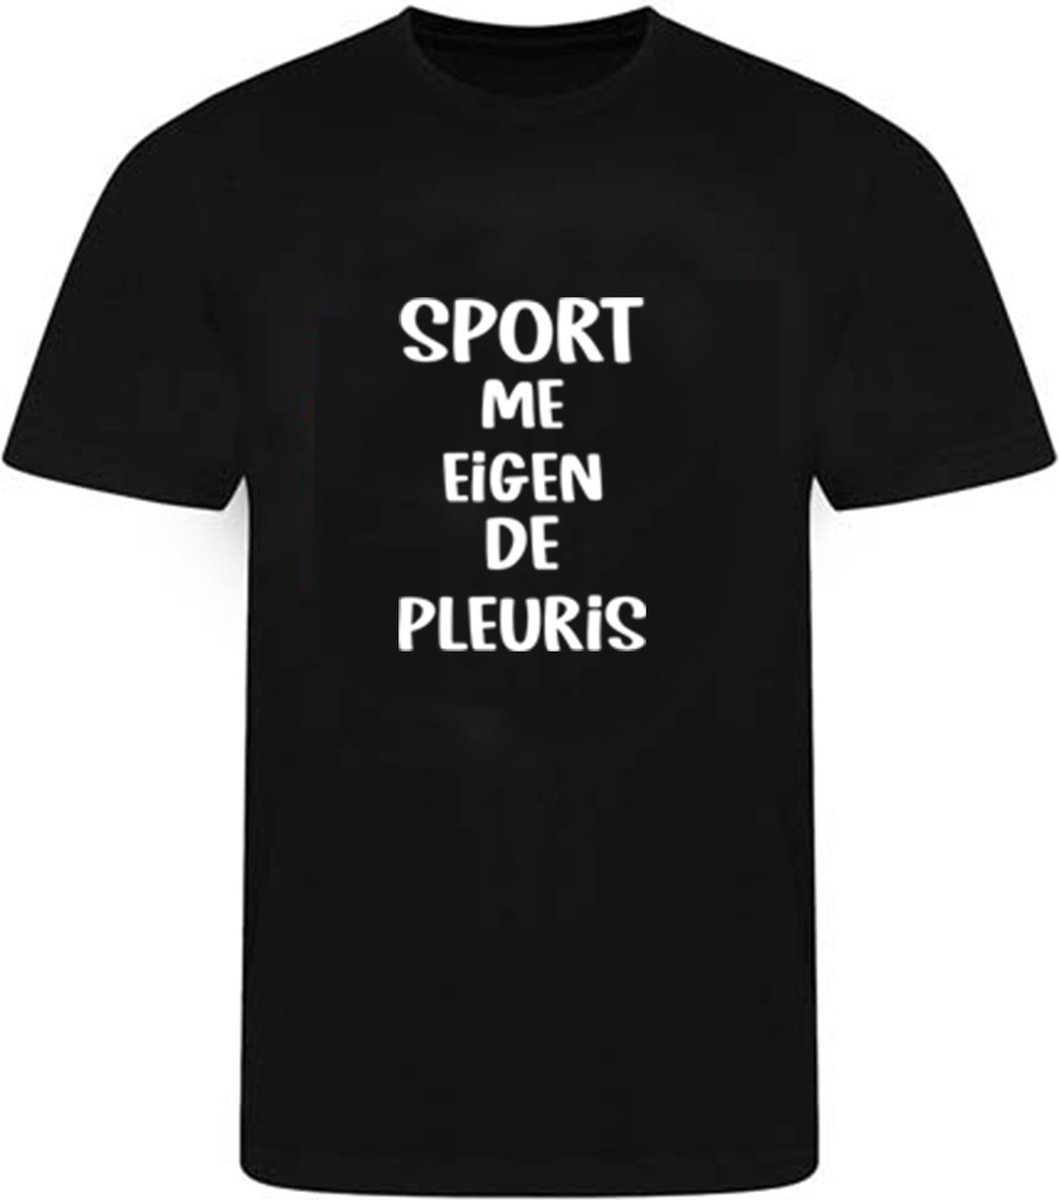 T-shirt Sport me eigen de pleuris maat S